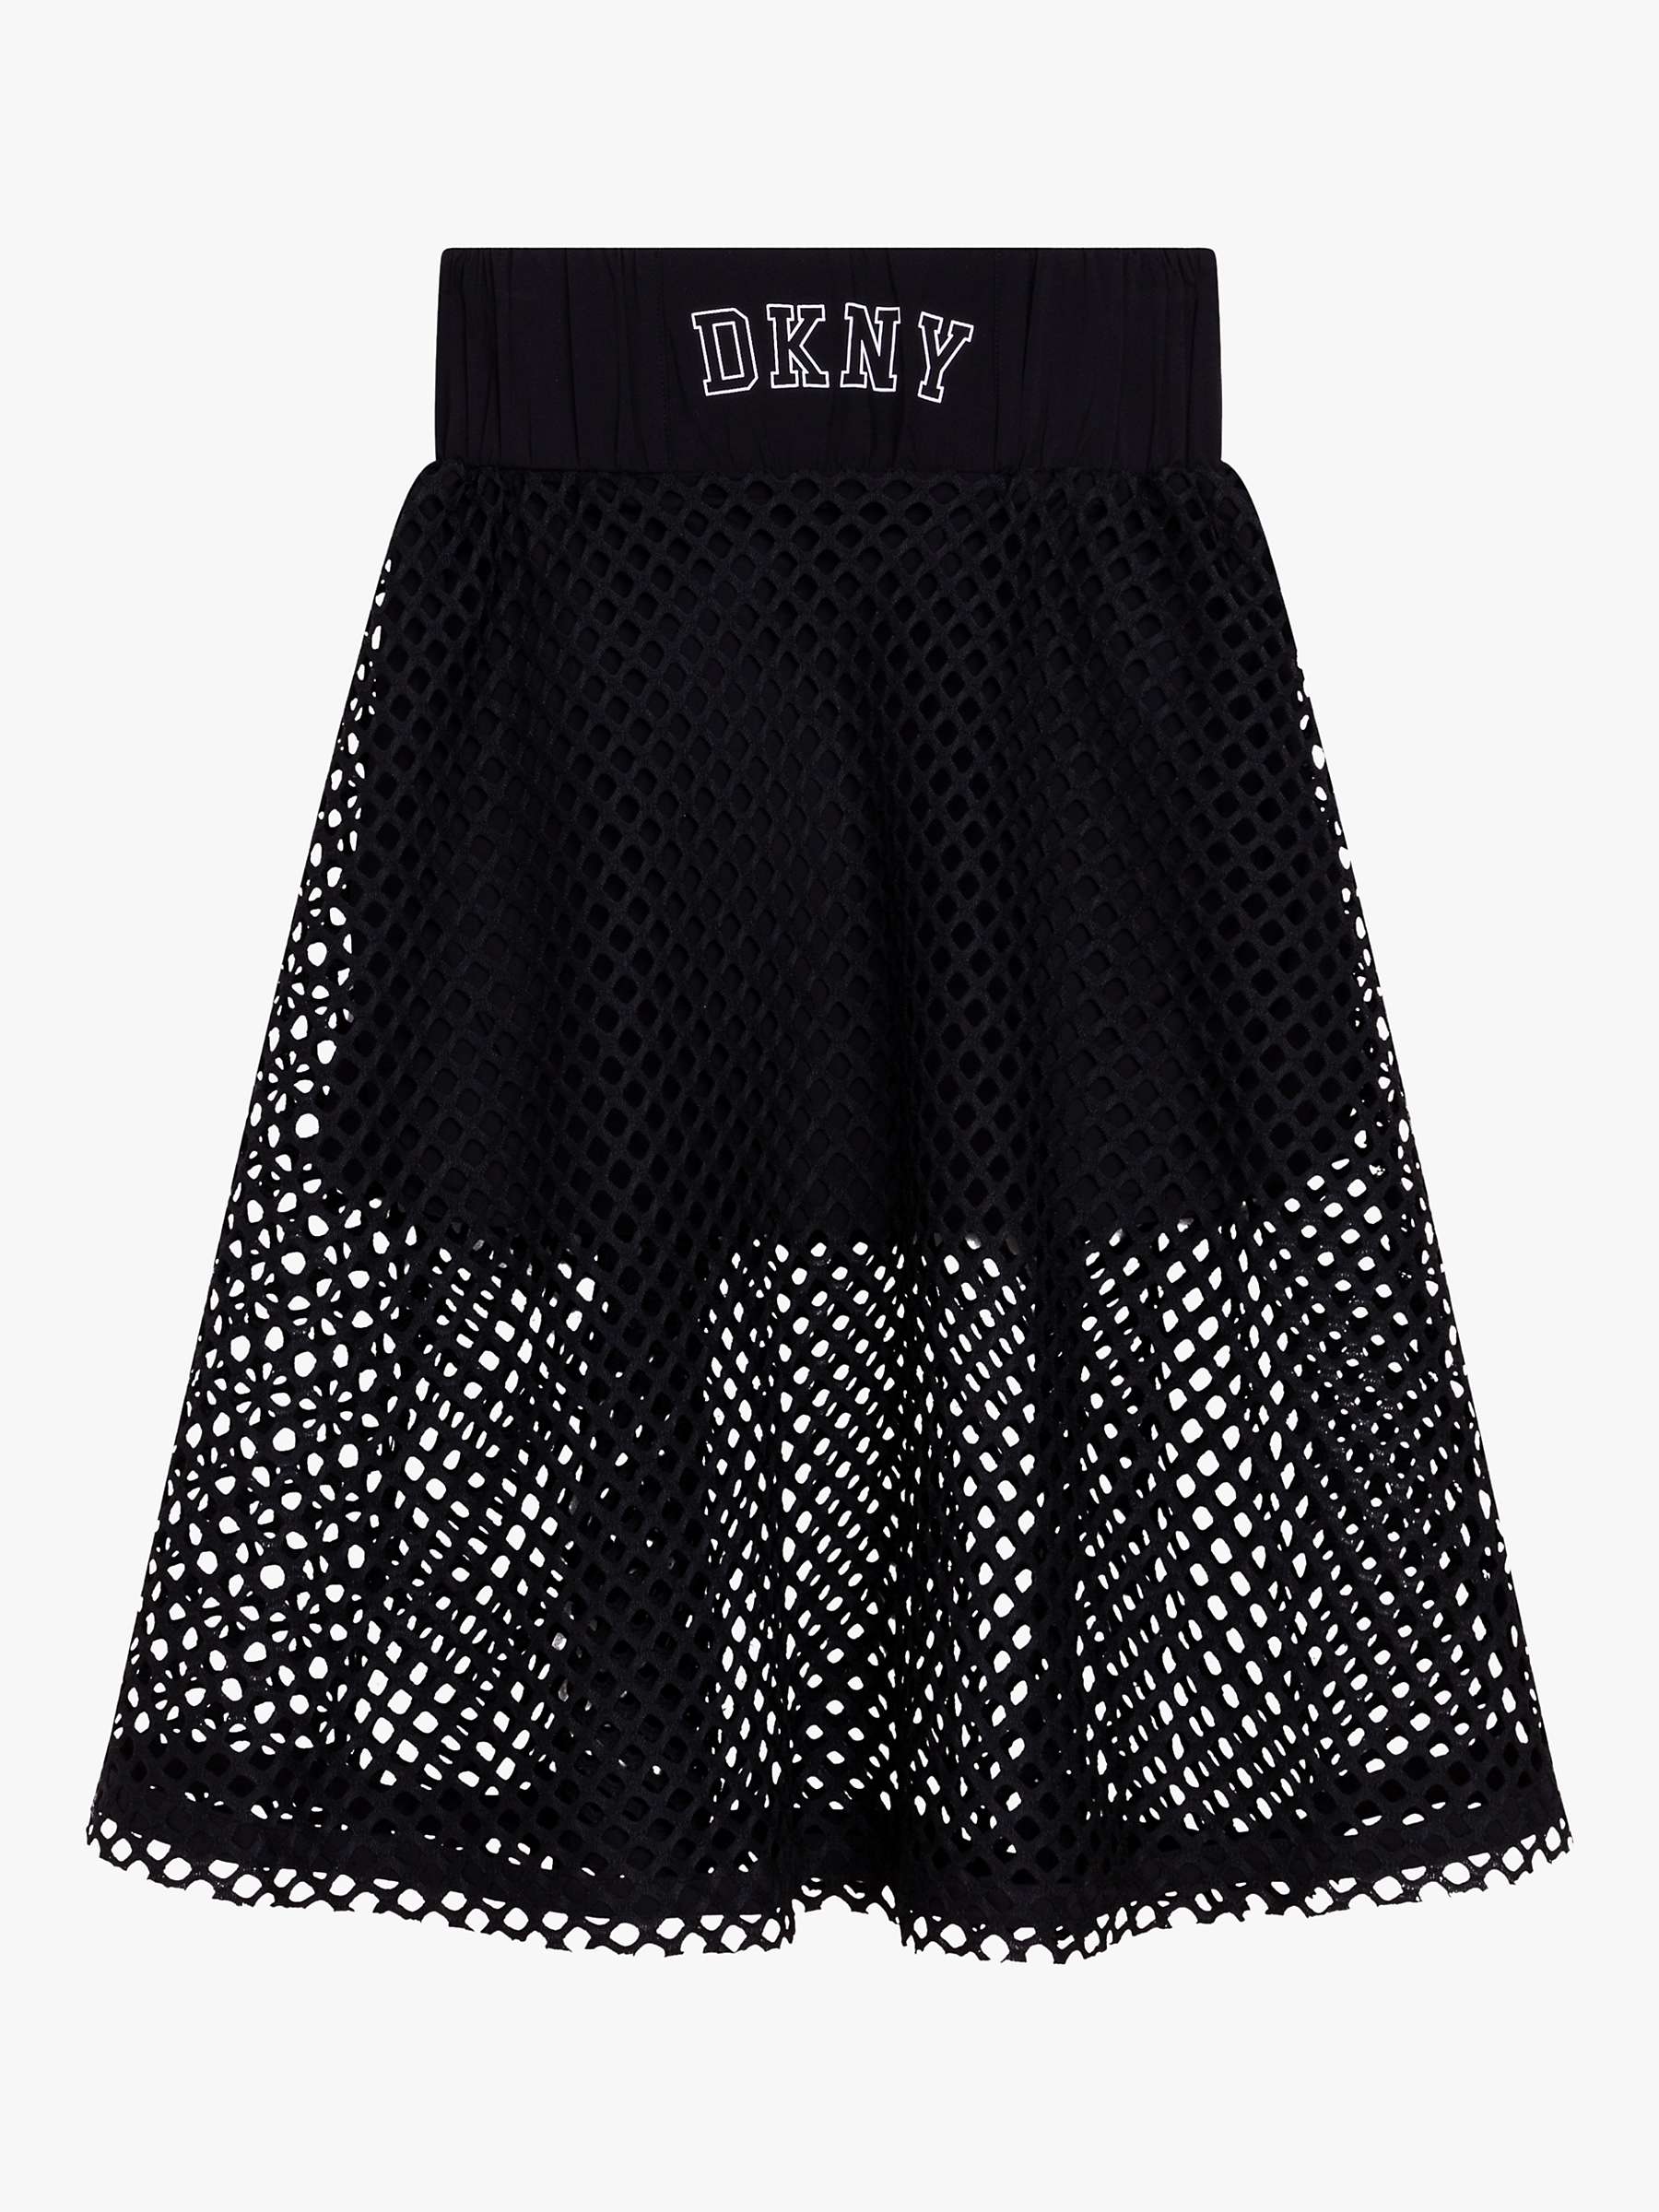 Buy DKNY Kids' Mesh Skirt, Black Online at johnlewis.com